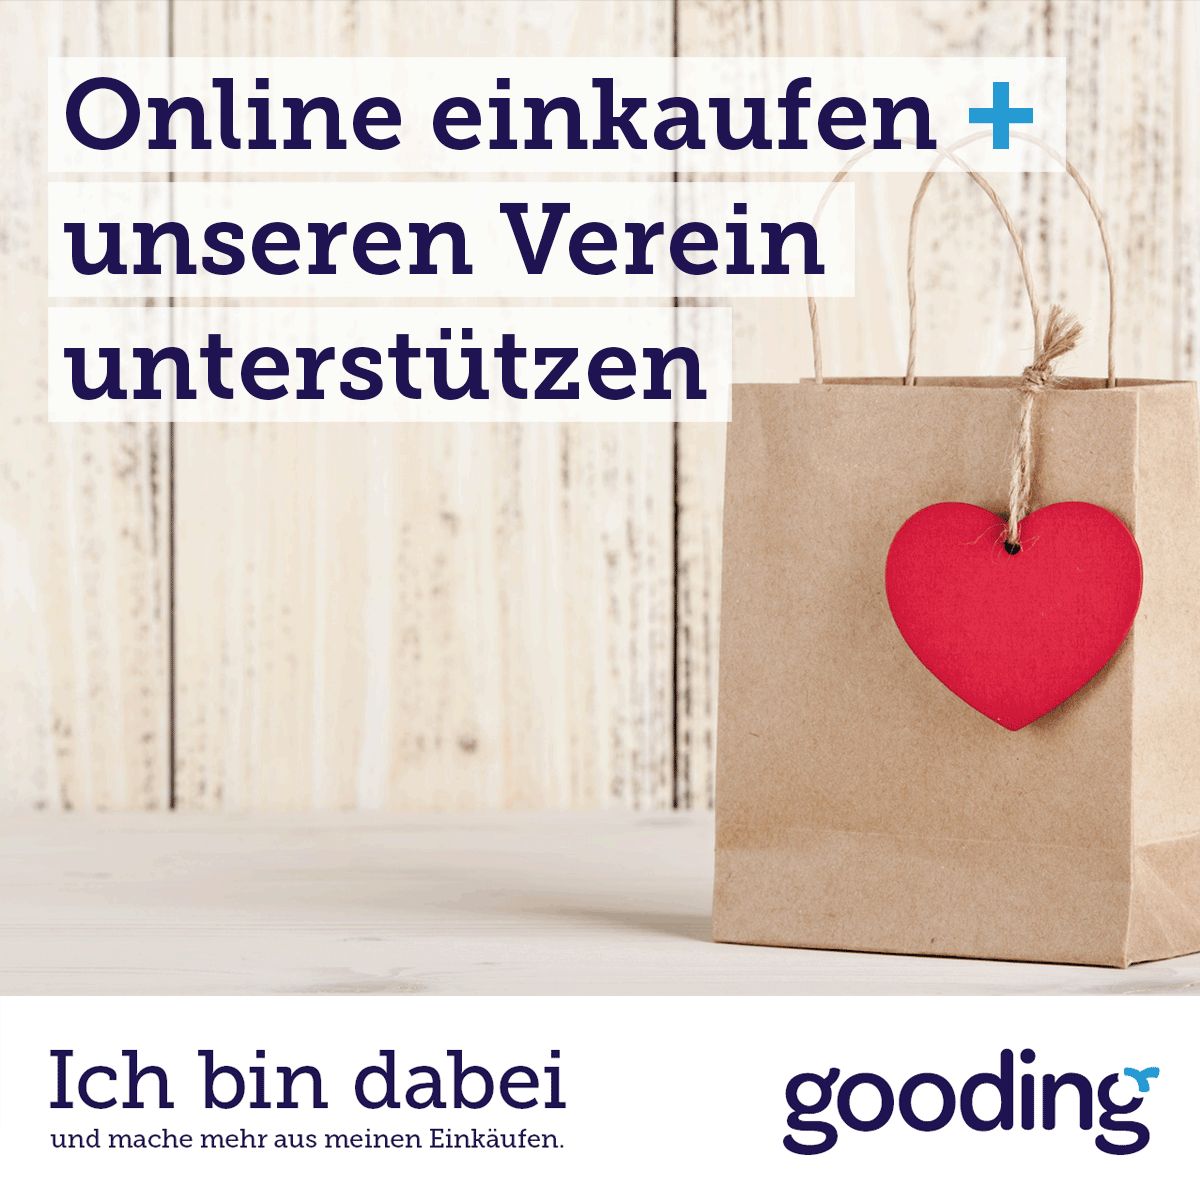 Online einkaufen - Verein unterstützen - Gooding.de